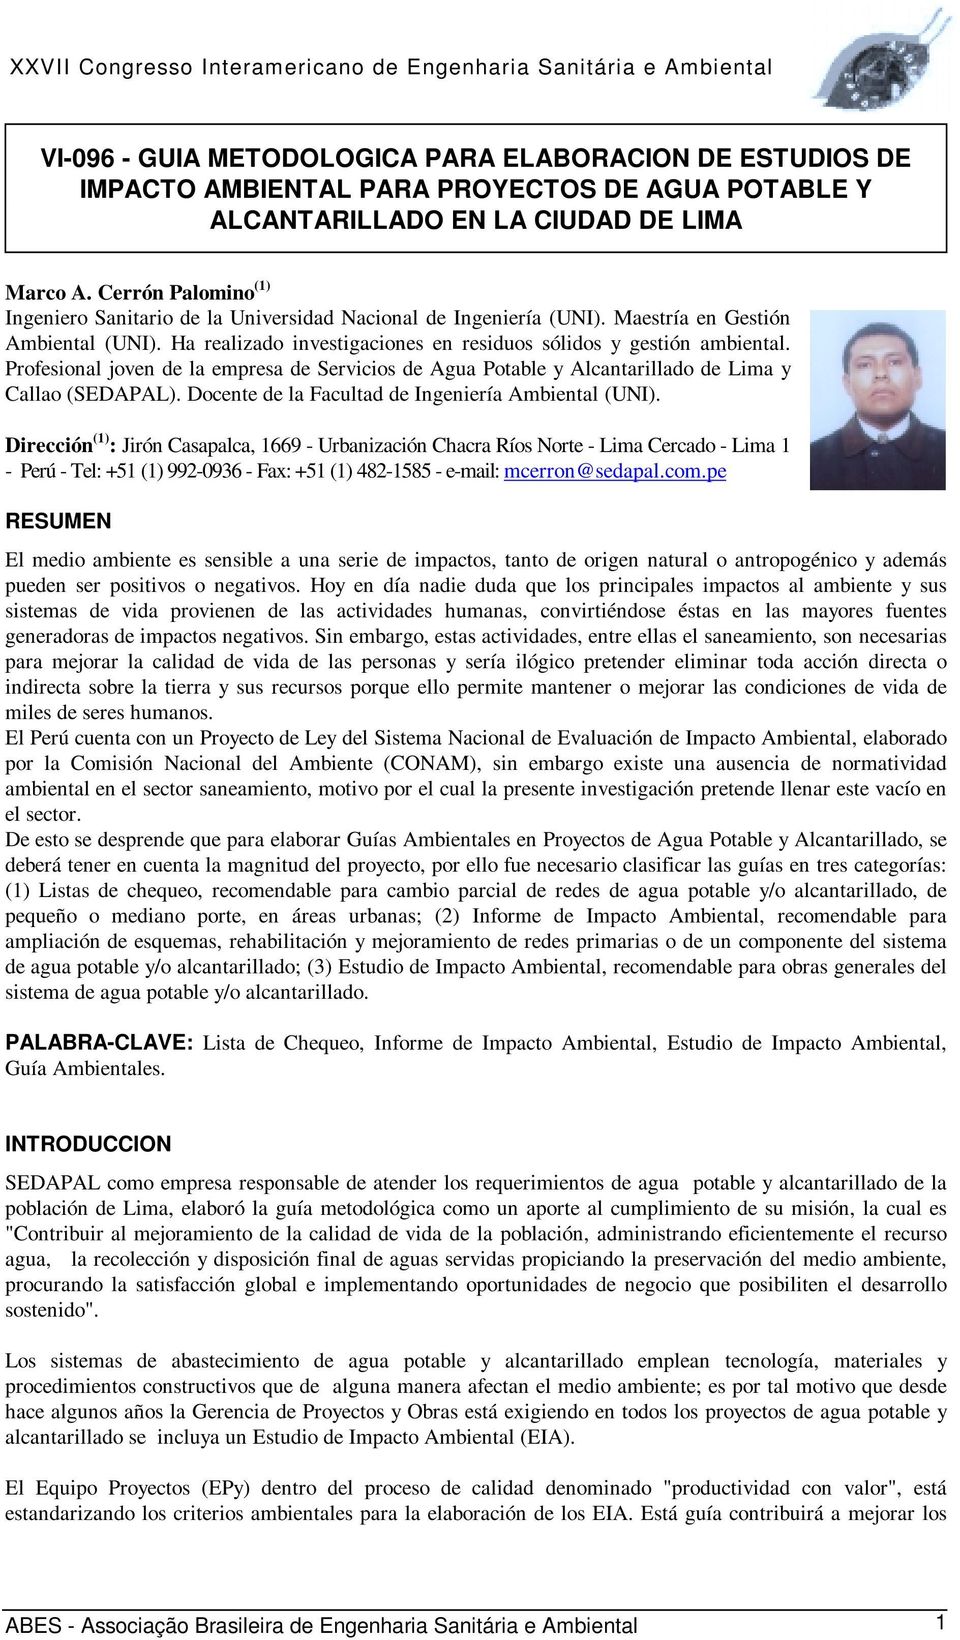 Profesional joven de la empresa de Servicios de Agua Potable y Alcantarillado de Lima y Callao (SEDAPAL). Docente de la Facultad de Ingeniería Ambiental (UNI).